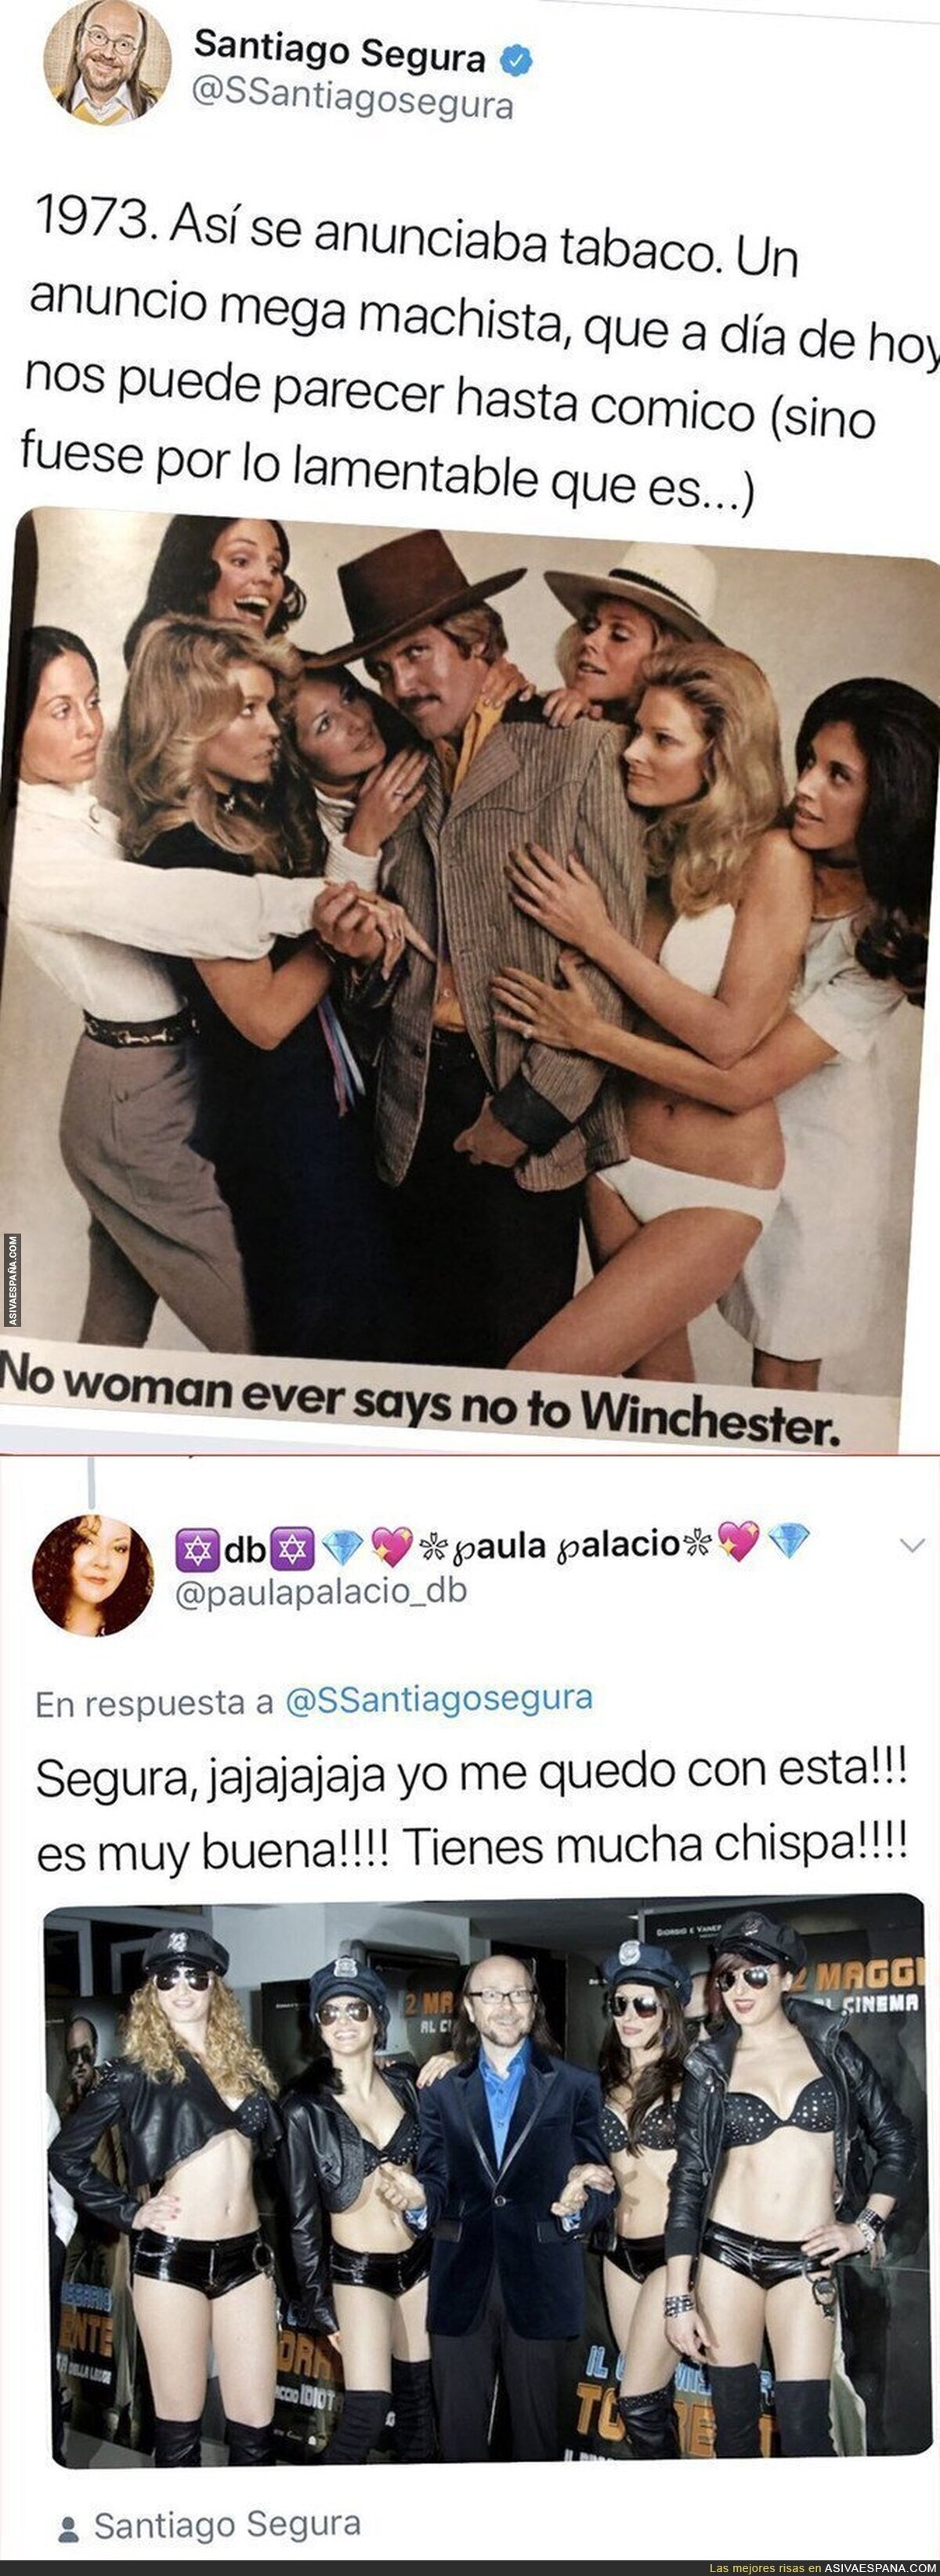 Santiago Segura se queja de los anuncios machistas para anunciar tabaco en los años '70 y recibe una respuesta que le deja por los suelos